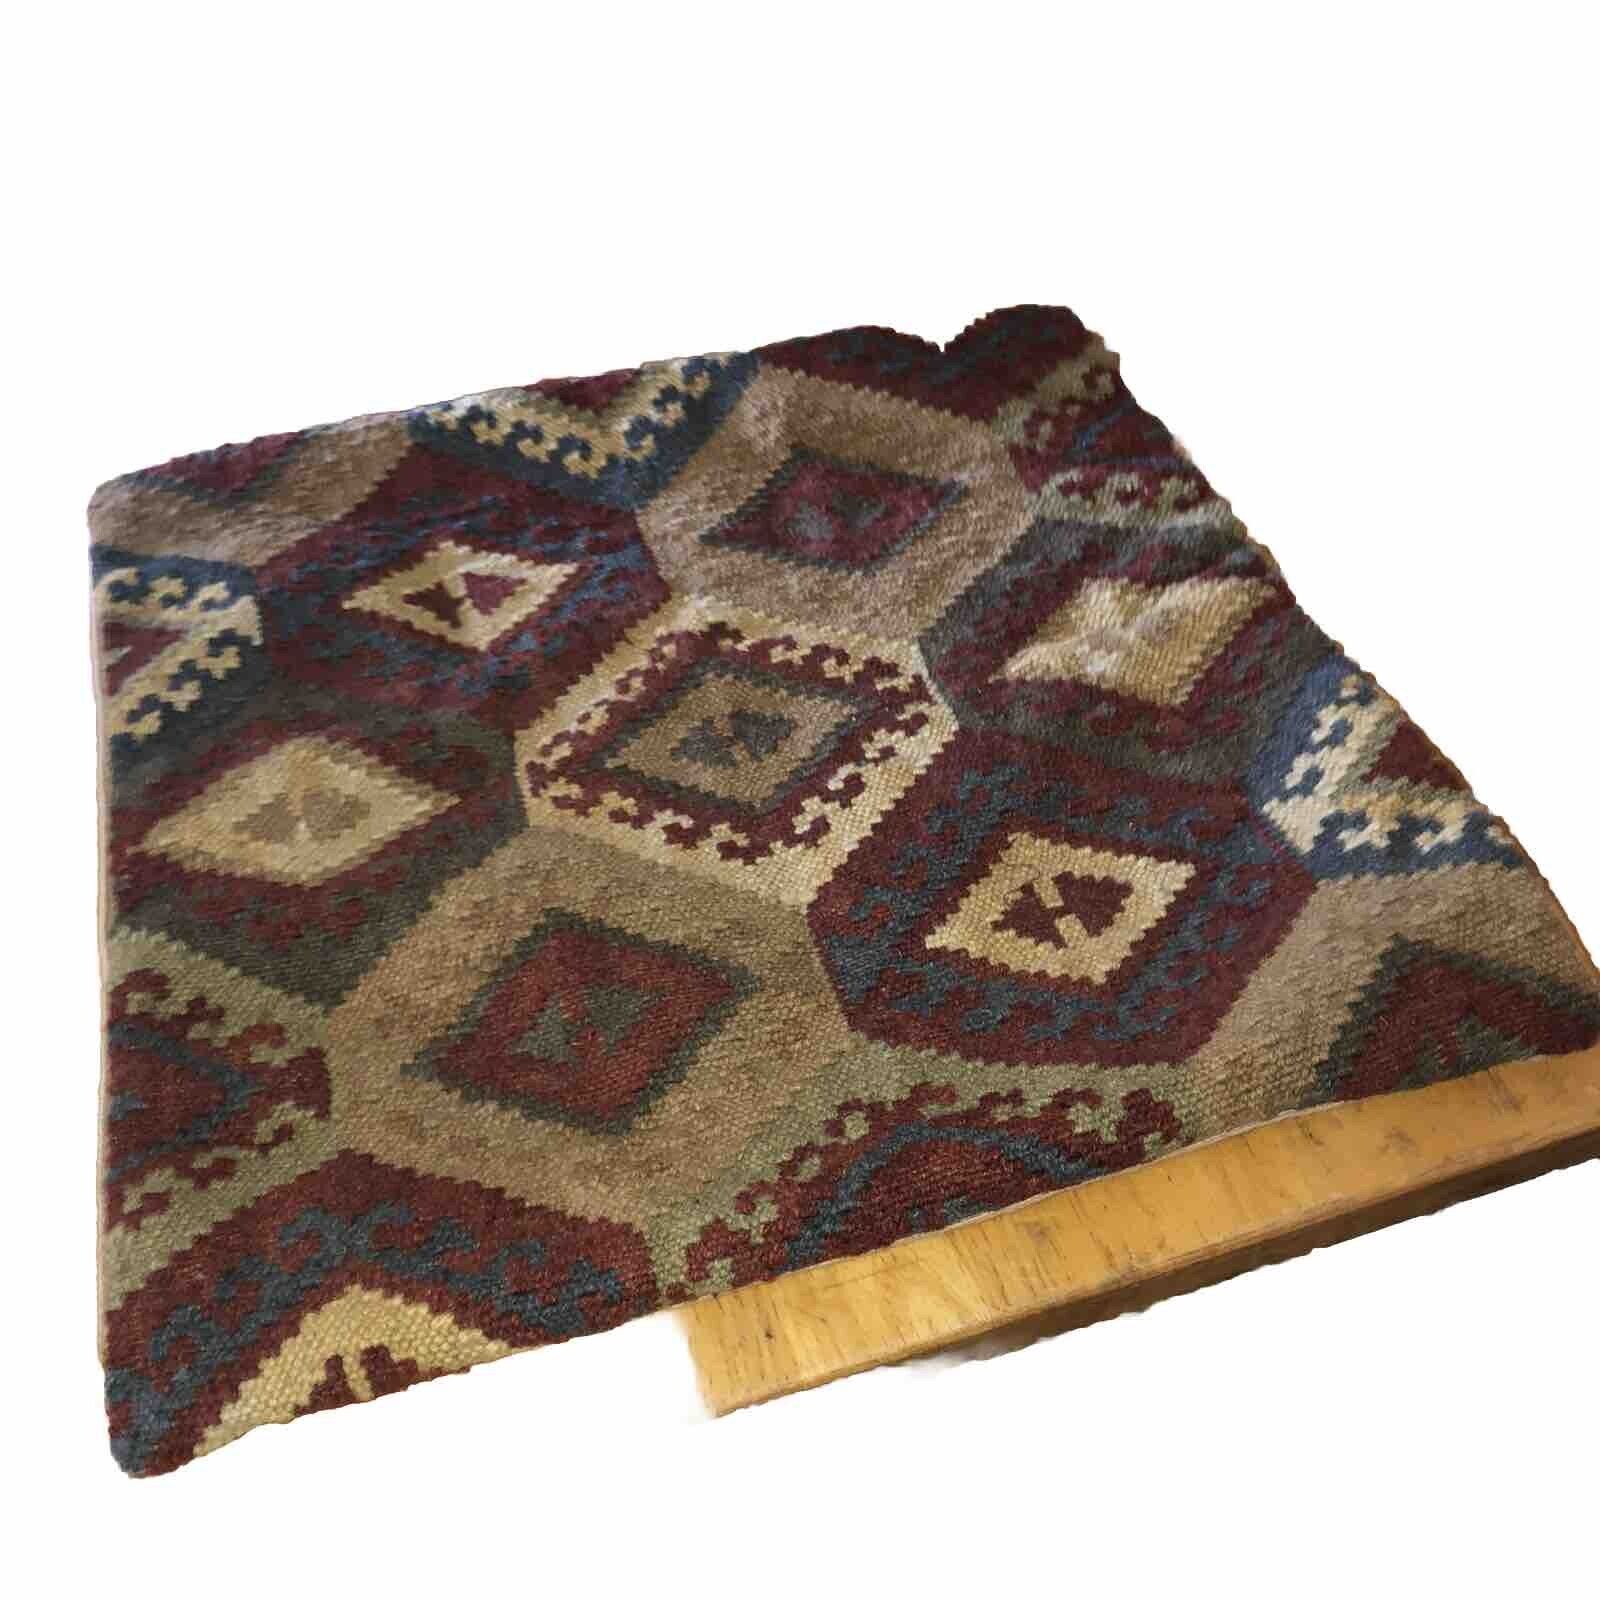 VTG Pottery Barn Kilim Wool/Cotton Multicolor 18” Square Pillow Cover #2 Fun